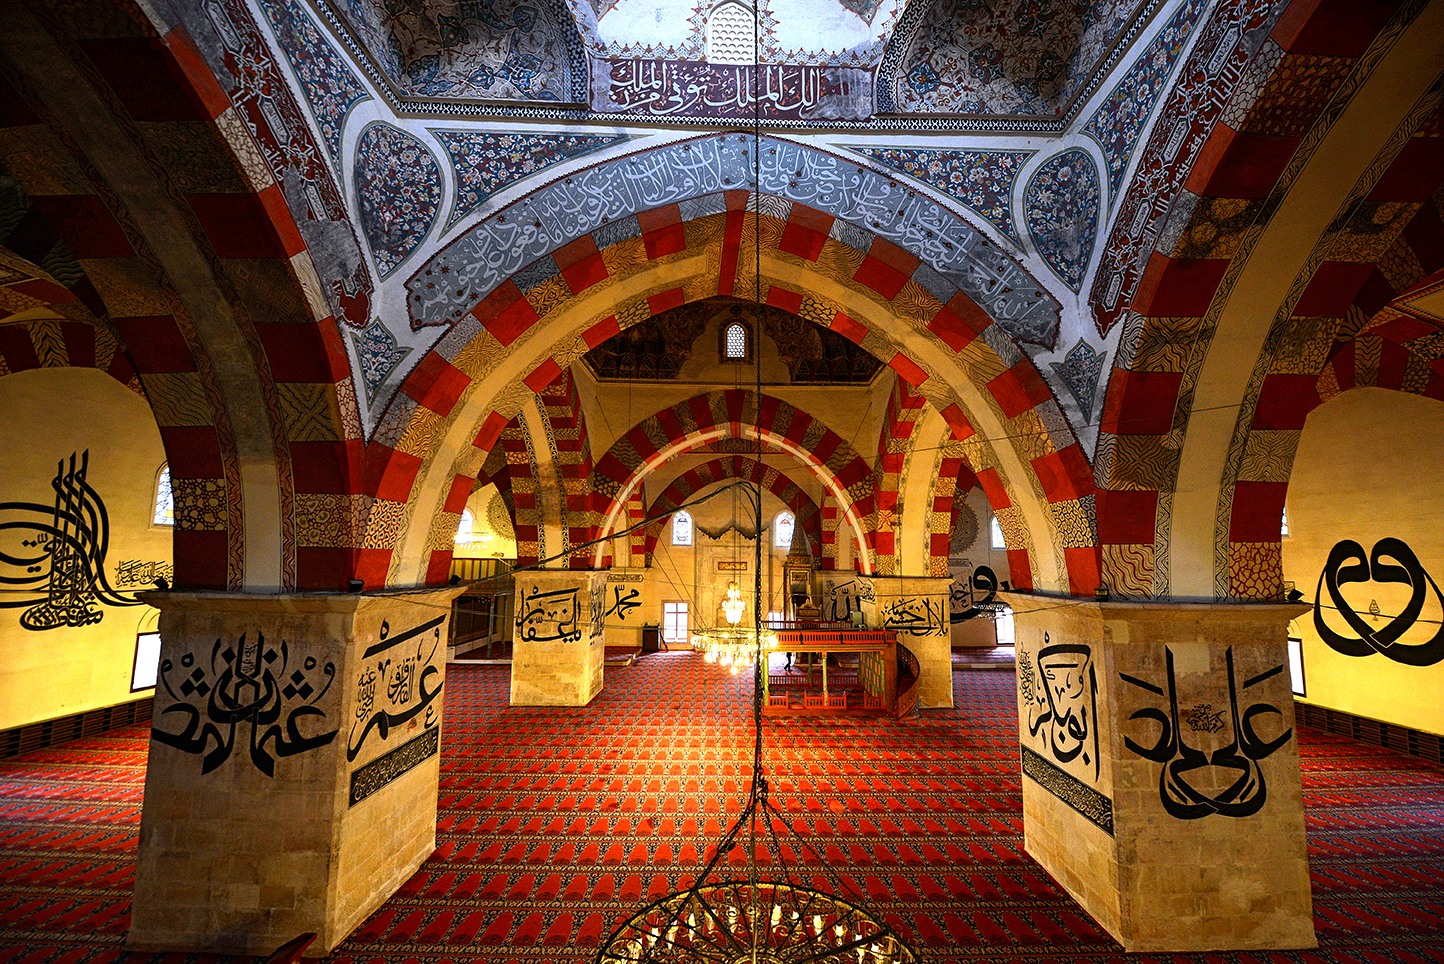 وبخلاف ذلك فقد جمع صور الـ 118 مسجد جامع التي كان قد صورها في ألبوم ونشرها في كتاب قبل سقوطه شهيداً بشهر واحد. (مسجد أدرنة القديم)